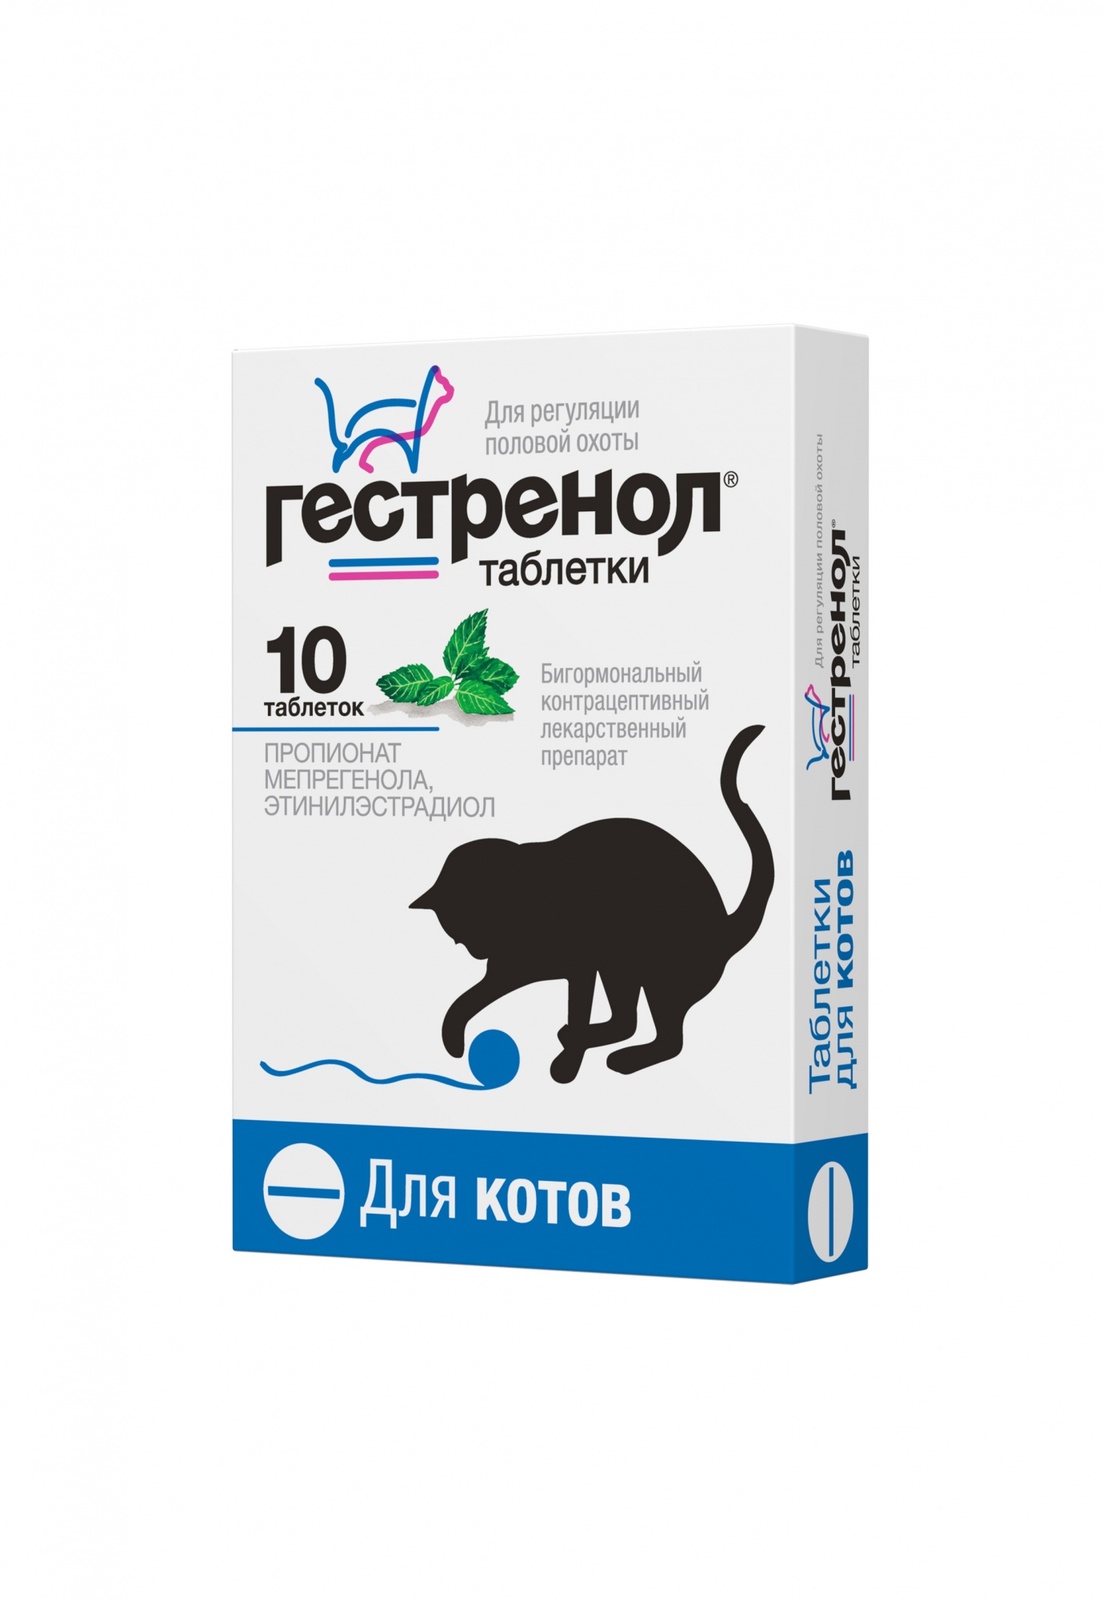 Астрафарм Астрафарм гестренол таблетки для котов для регуляции половой охоты, 10 таб. (7 г) сексконтроль таблетки для регуляции половой охоты для котов 10 таб